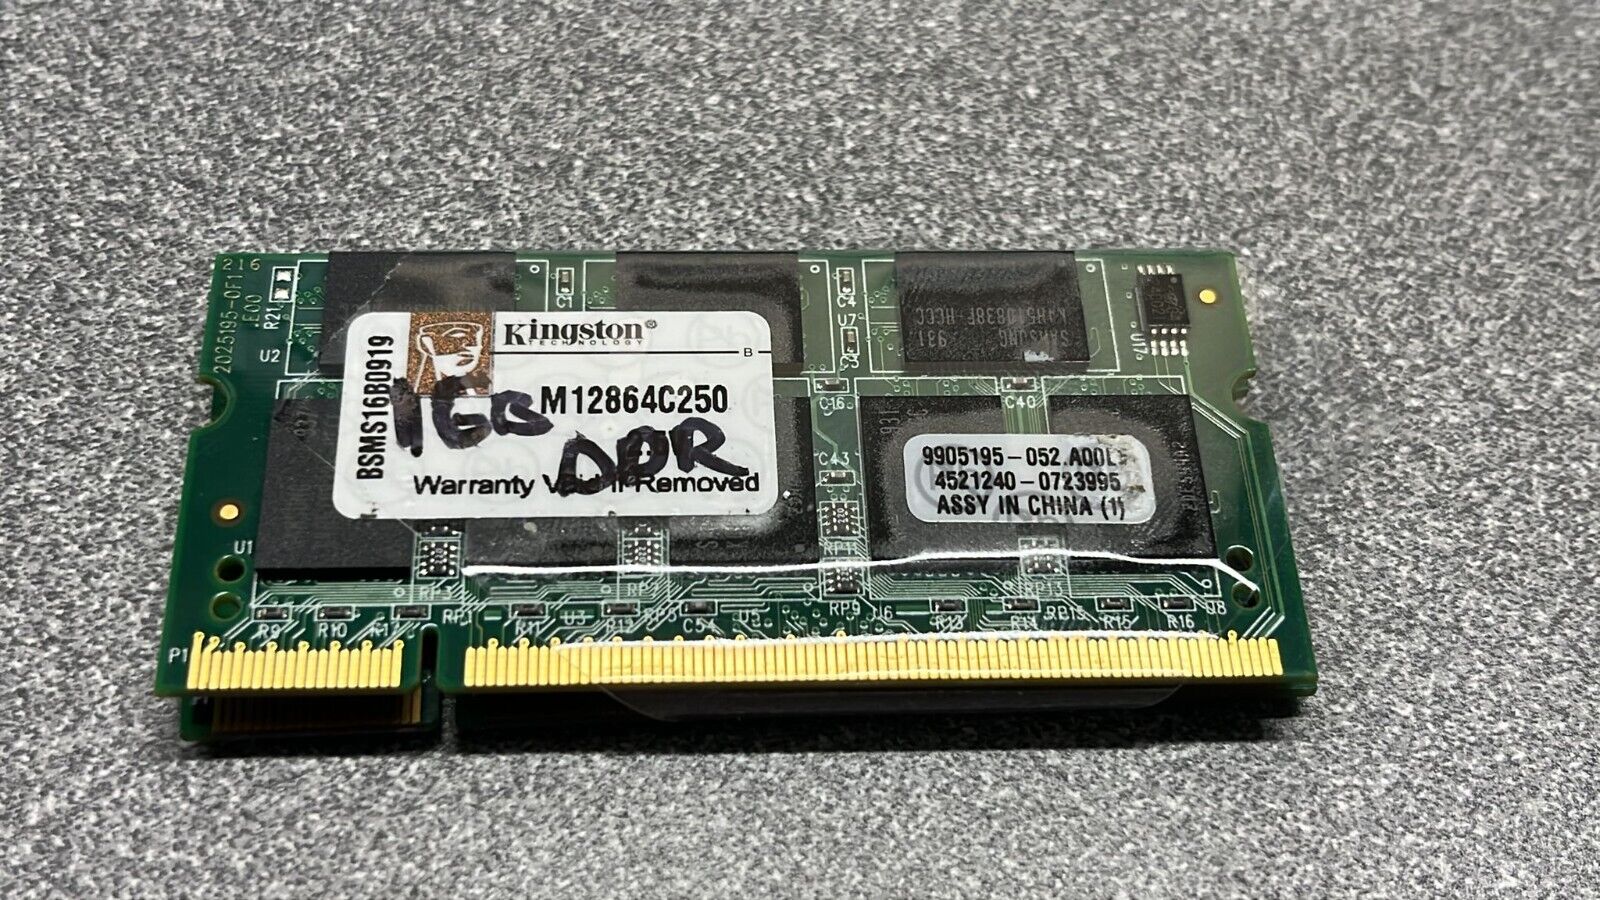 Kingston laptop memory ddr 1GB